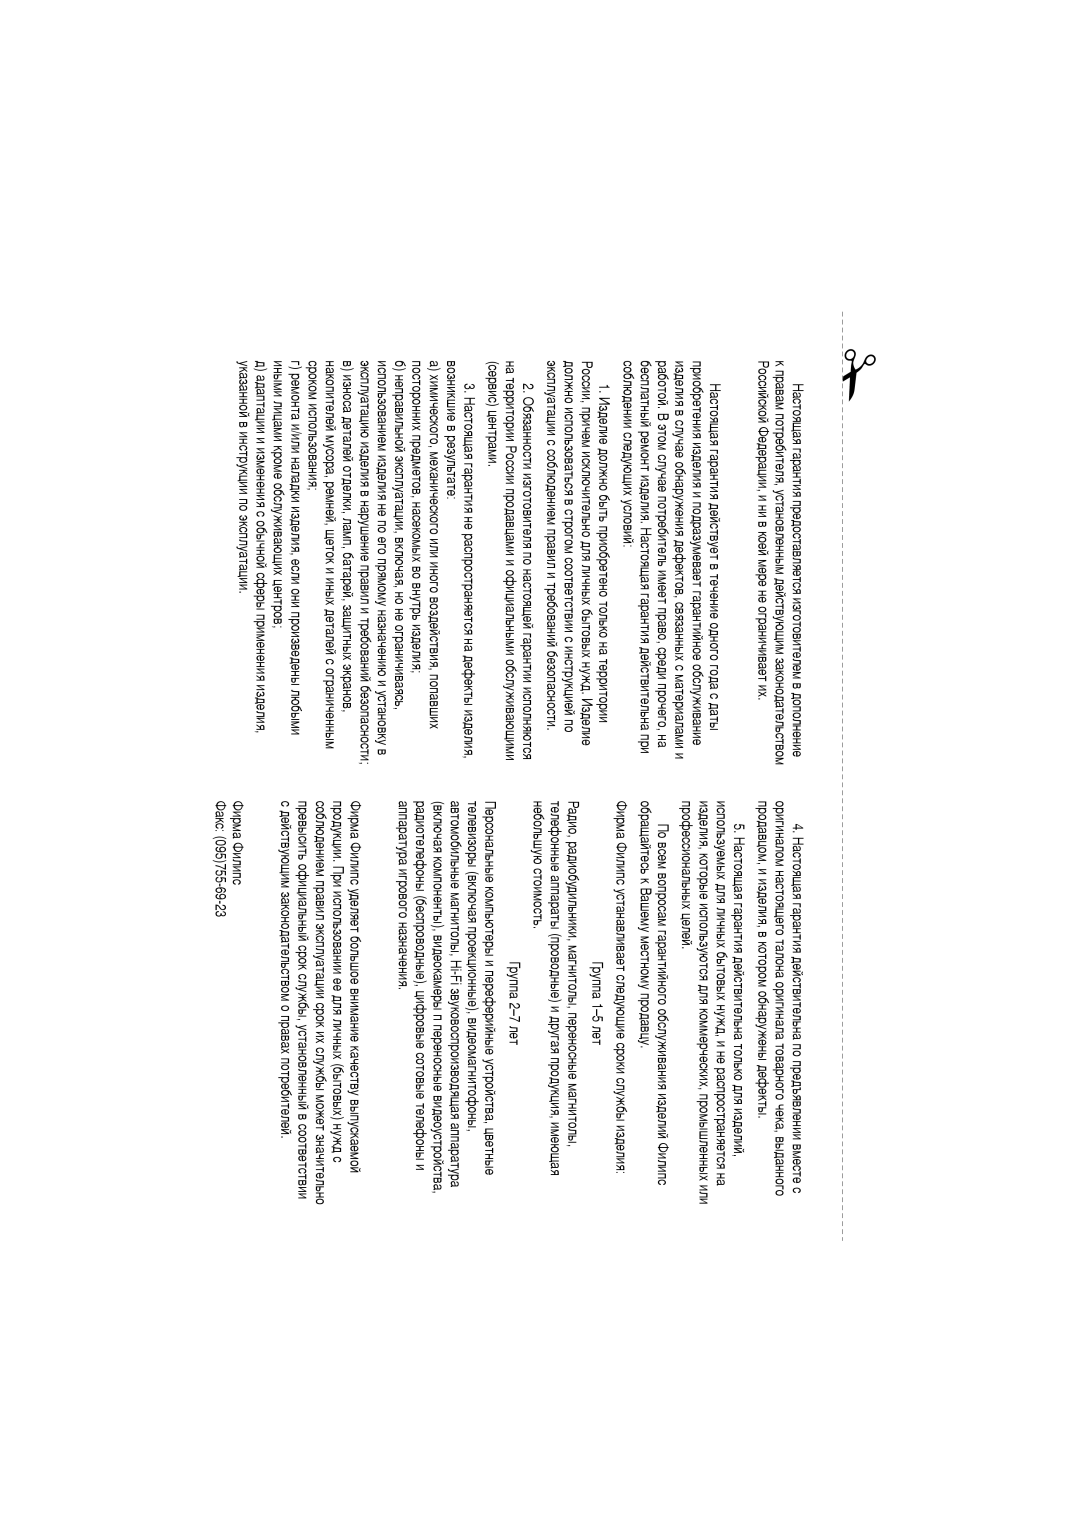 Philips LX3700D manual ËÌûÏË ÎËˆ‡ÏË ÍÓÏÂ Ó·ÒÎÛÊË‚‡þùËõ ˆÂÌÚÓ‚ 